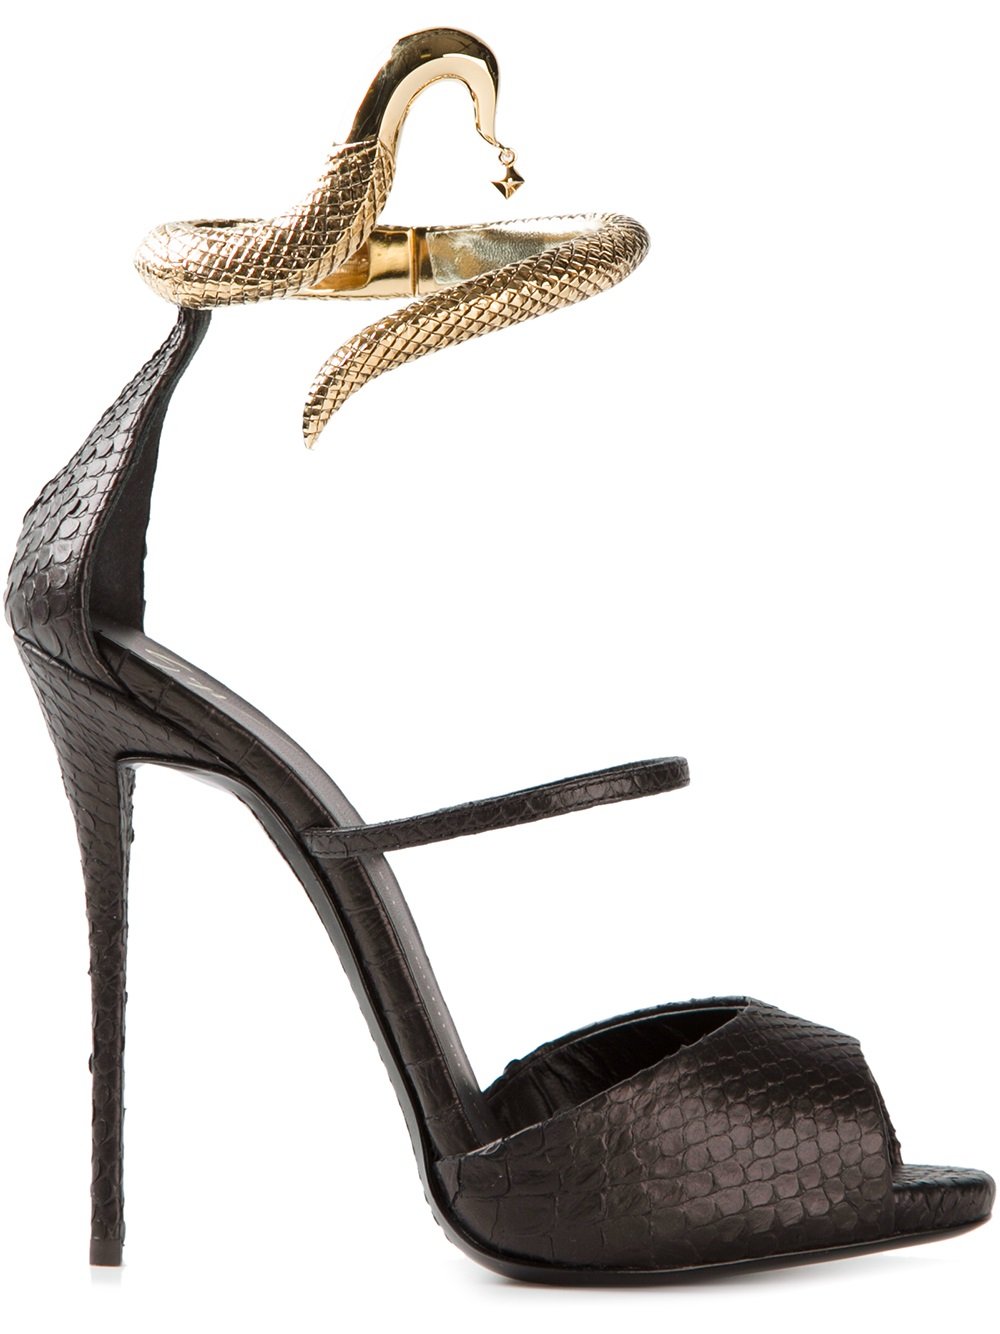 Giuseppe Zanotti Snake Embellished Sandals in Black | Lyst